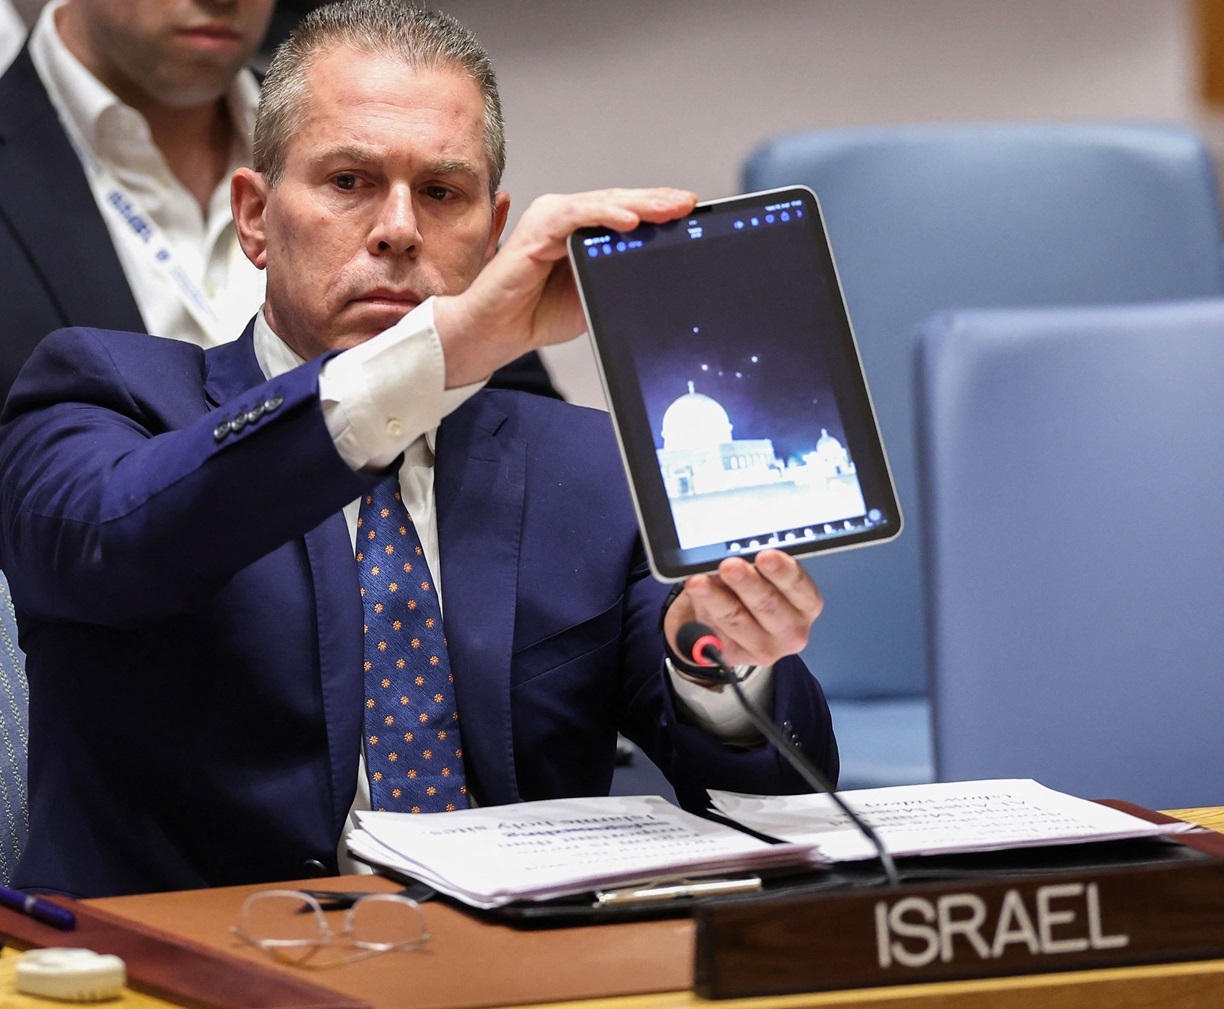 15 تصویر پیشنهادی برای نمایش در تبلت نماینده اسرائیل در سازمان ملل